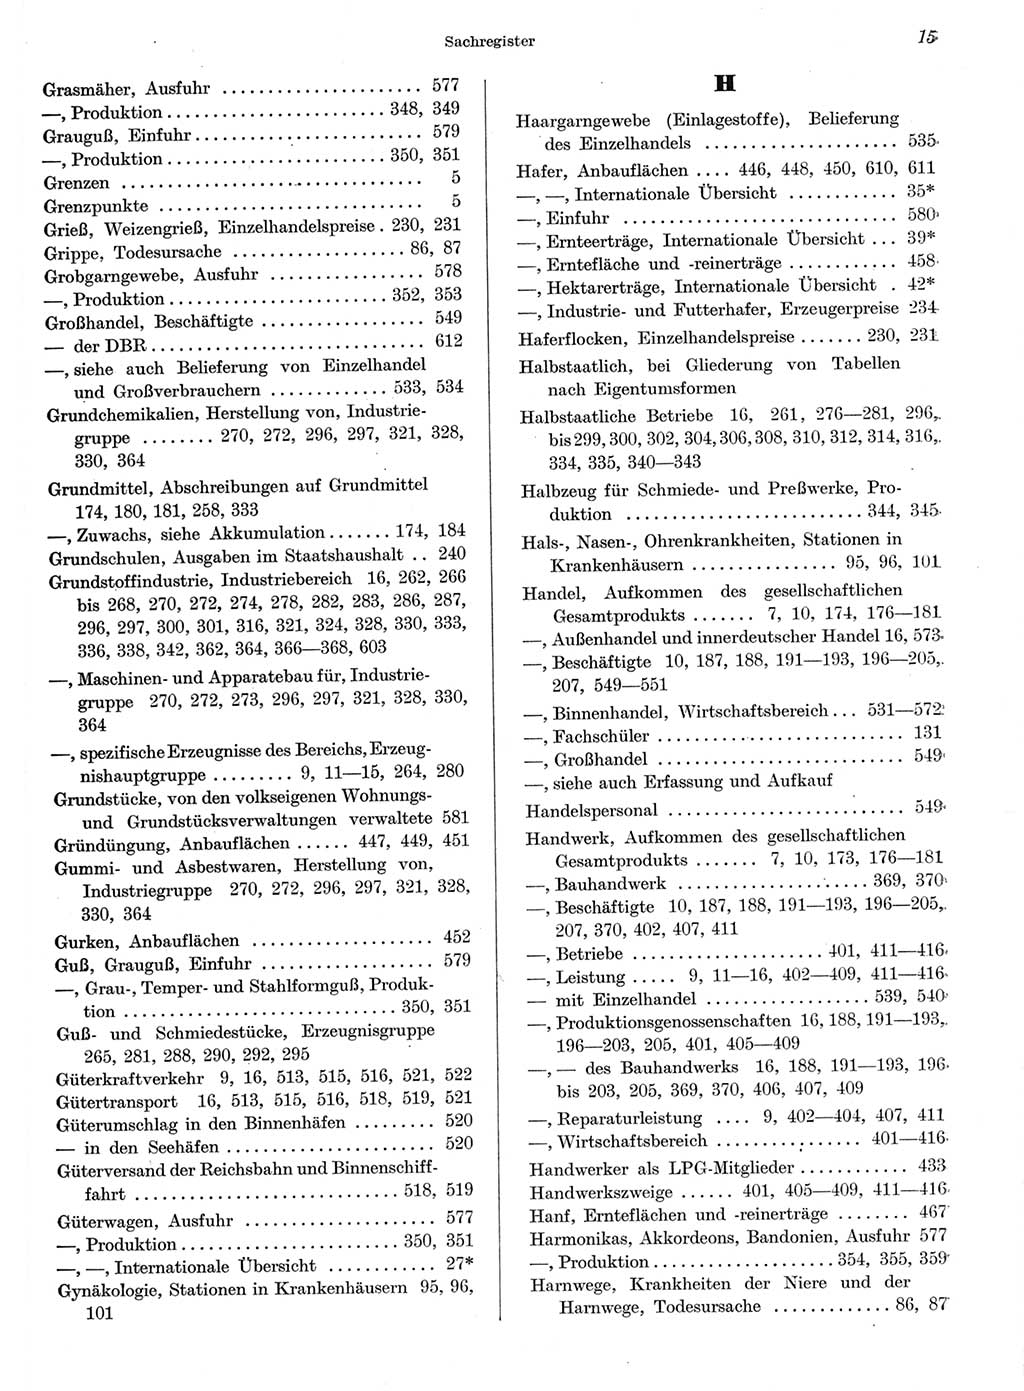 Statistisches Jahrbuch der Deutschen Demokratischen Republik (DDR) 1959, Seite 15 (Stat. Jb. DDR 1959, S. 15)